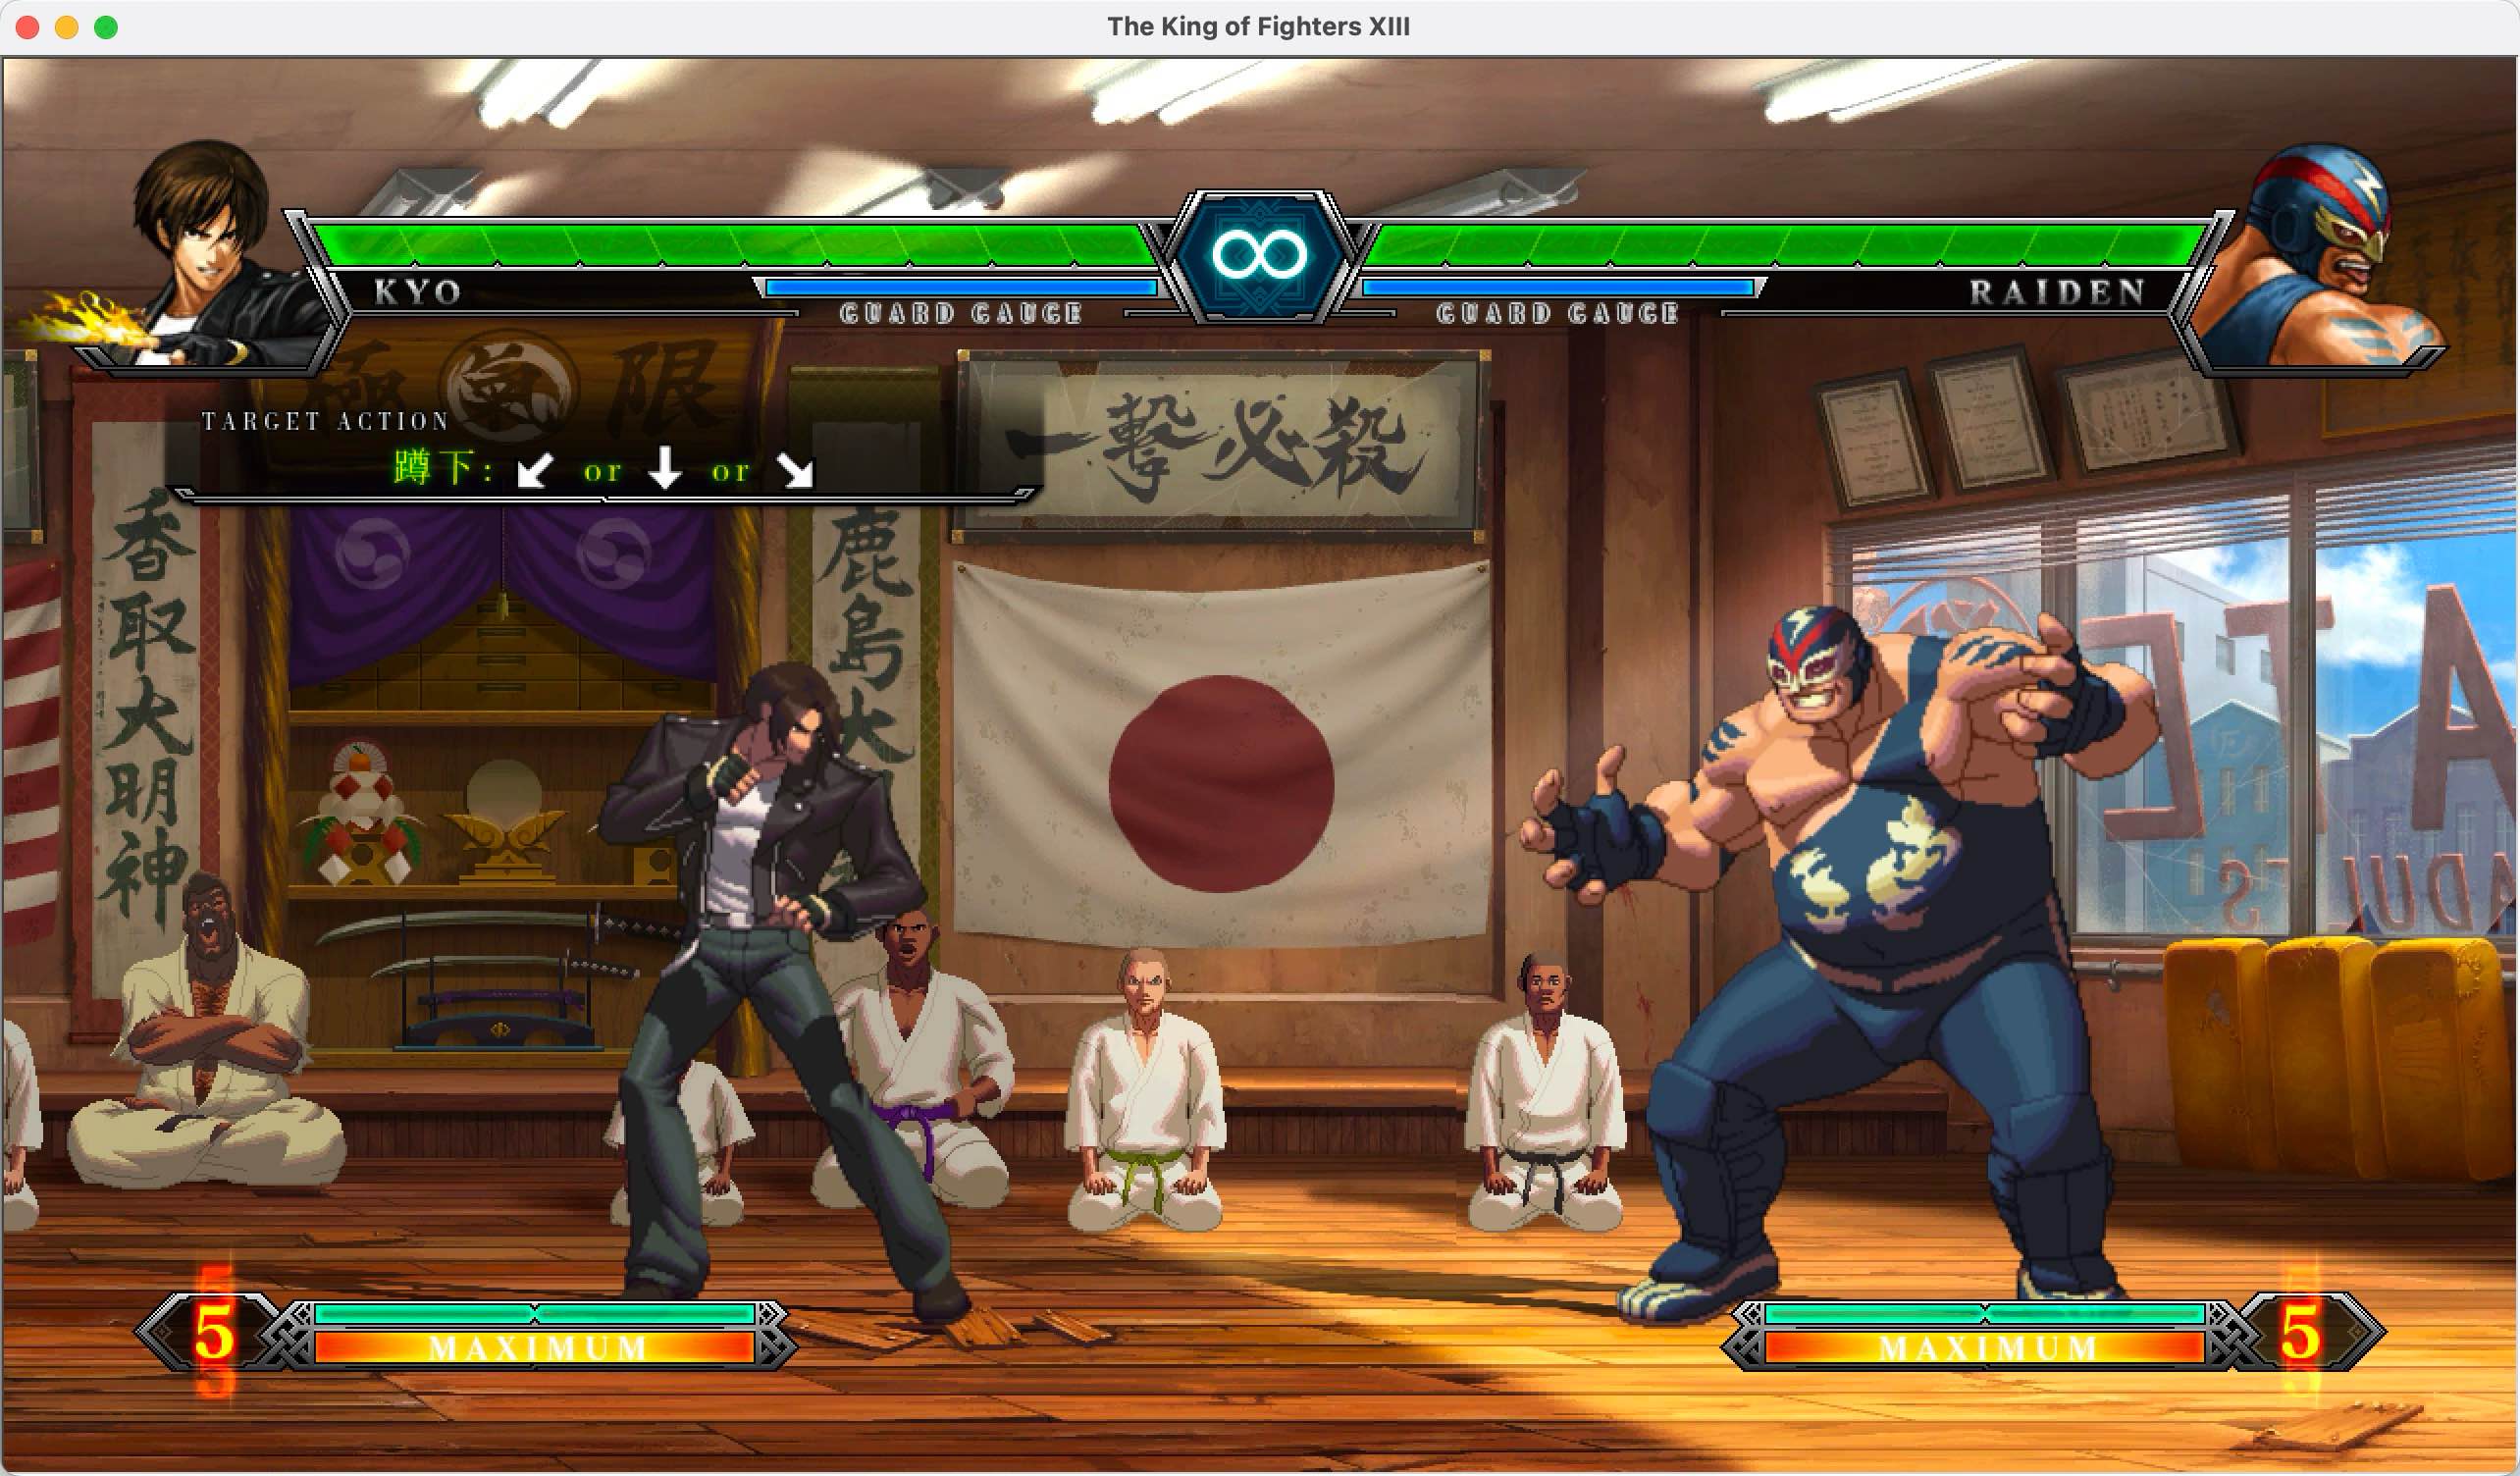 拳皇13 for Mac v1.4b The King Of Fighters XIII 中文移植版 苹果电脑